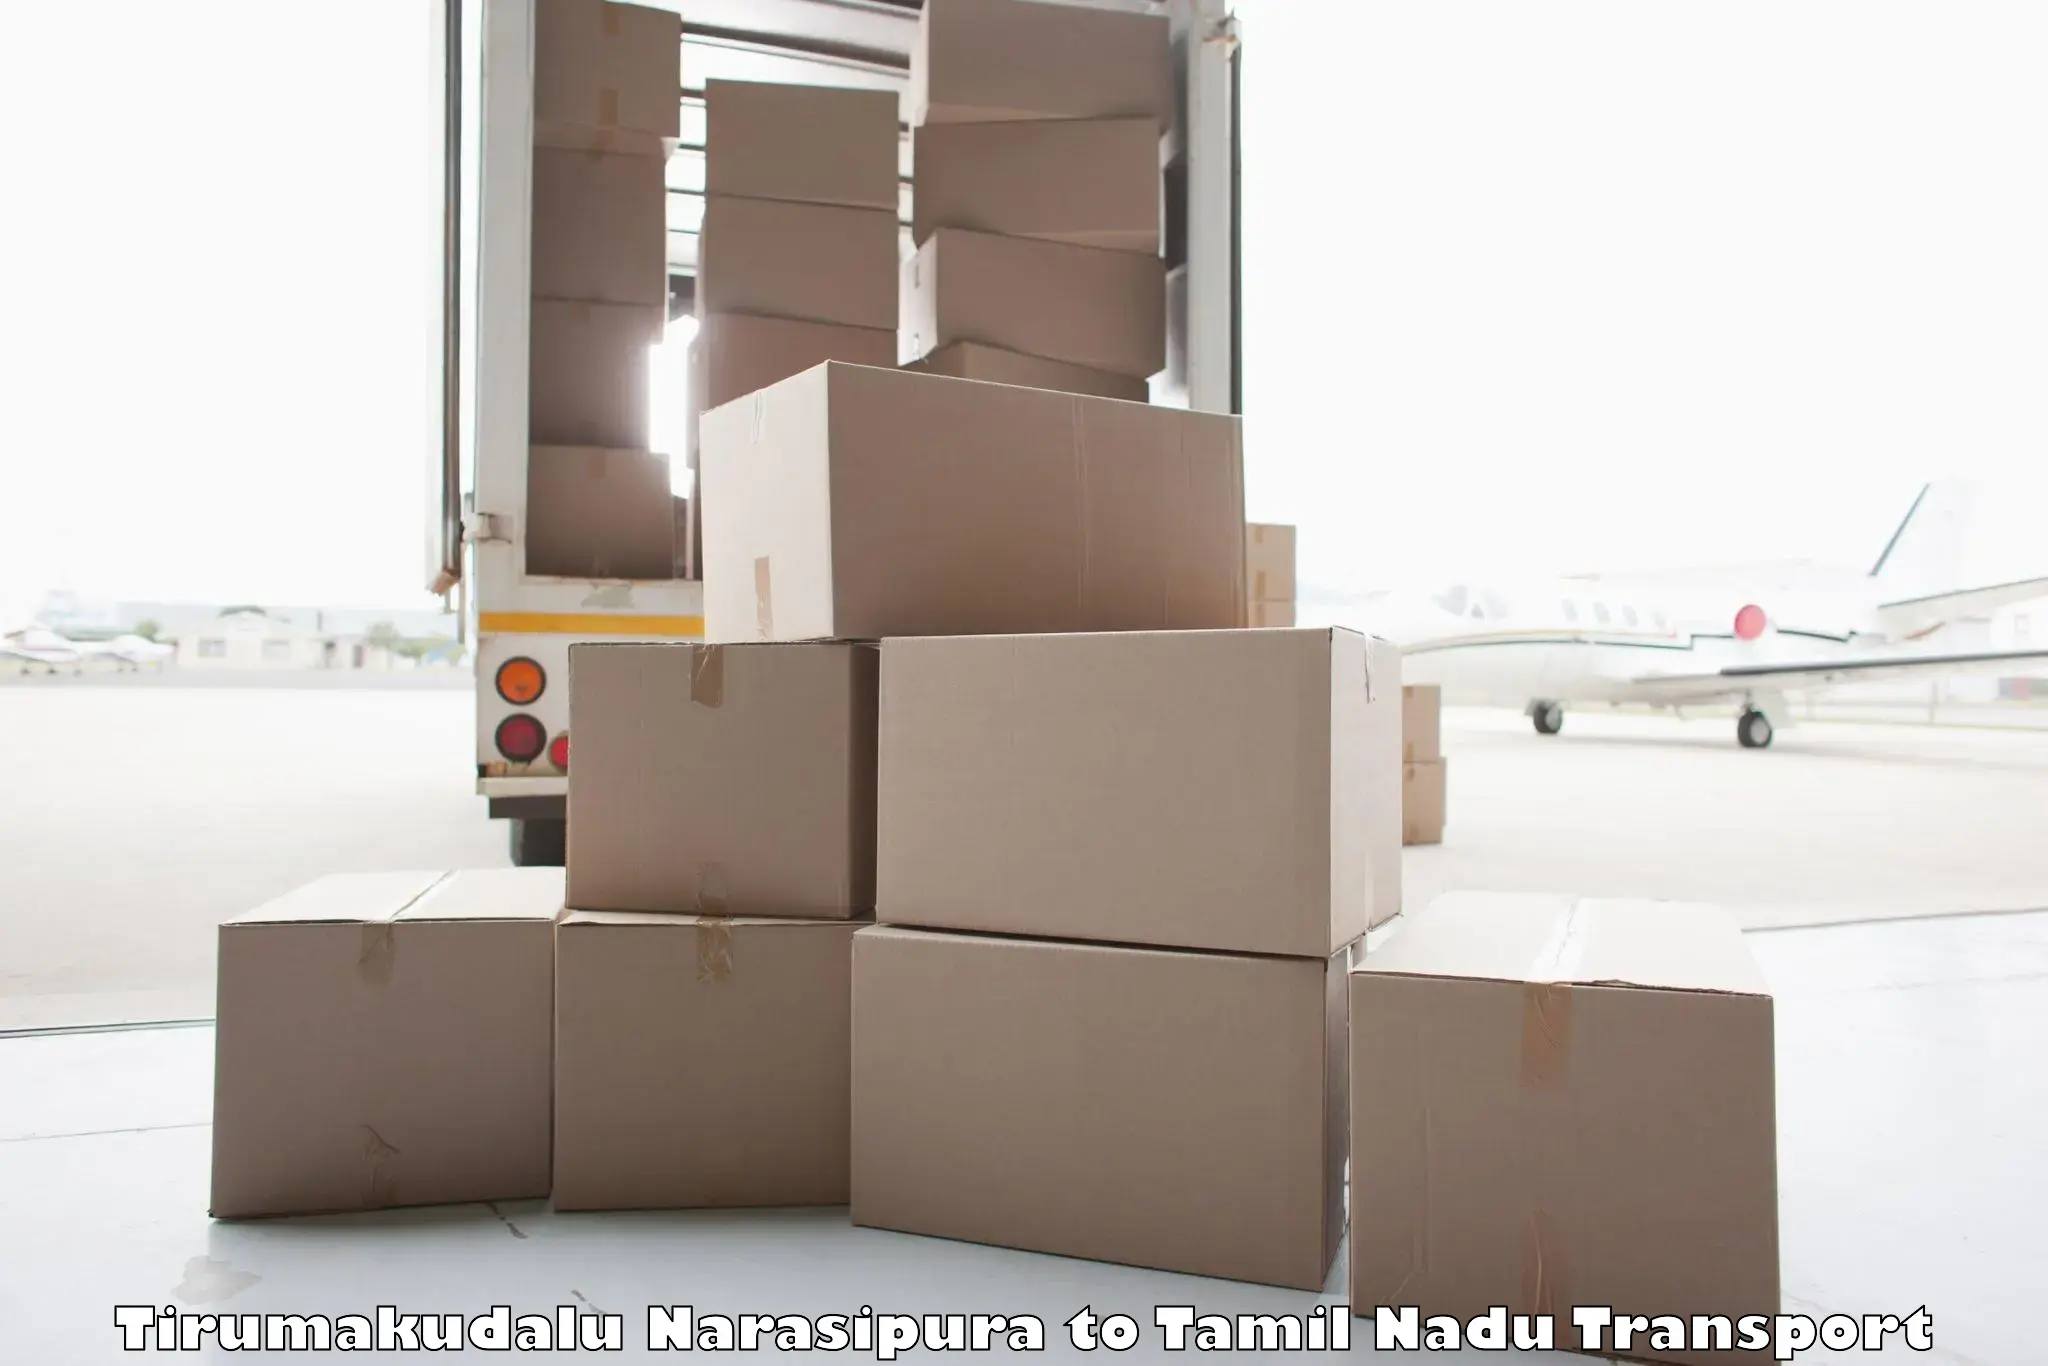 Luggage transport services Tirumakudalu Narasipura to Viralimalai